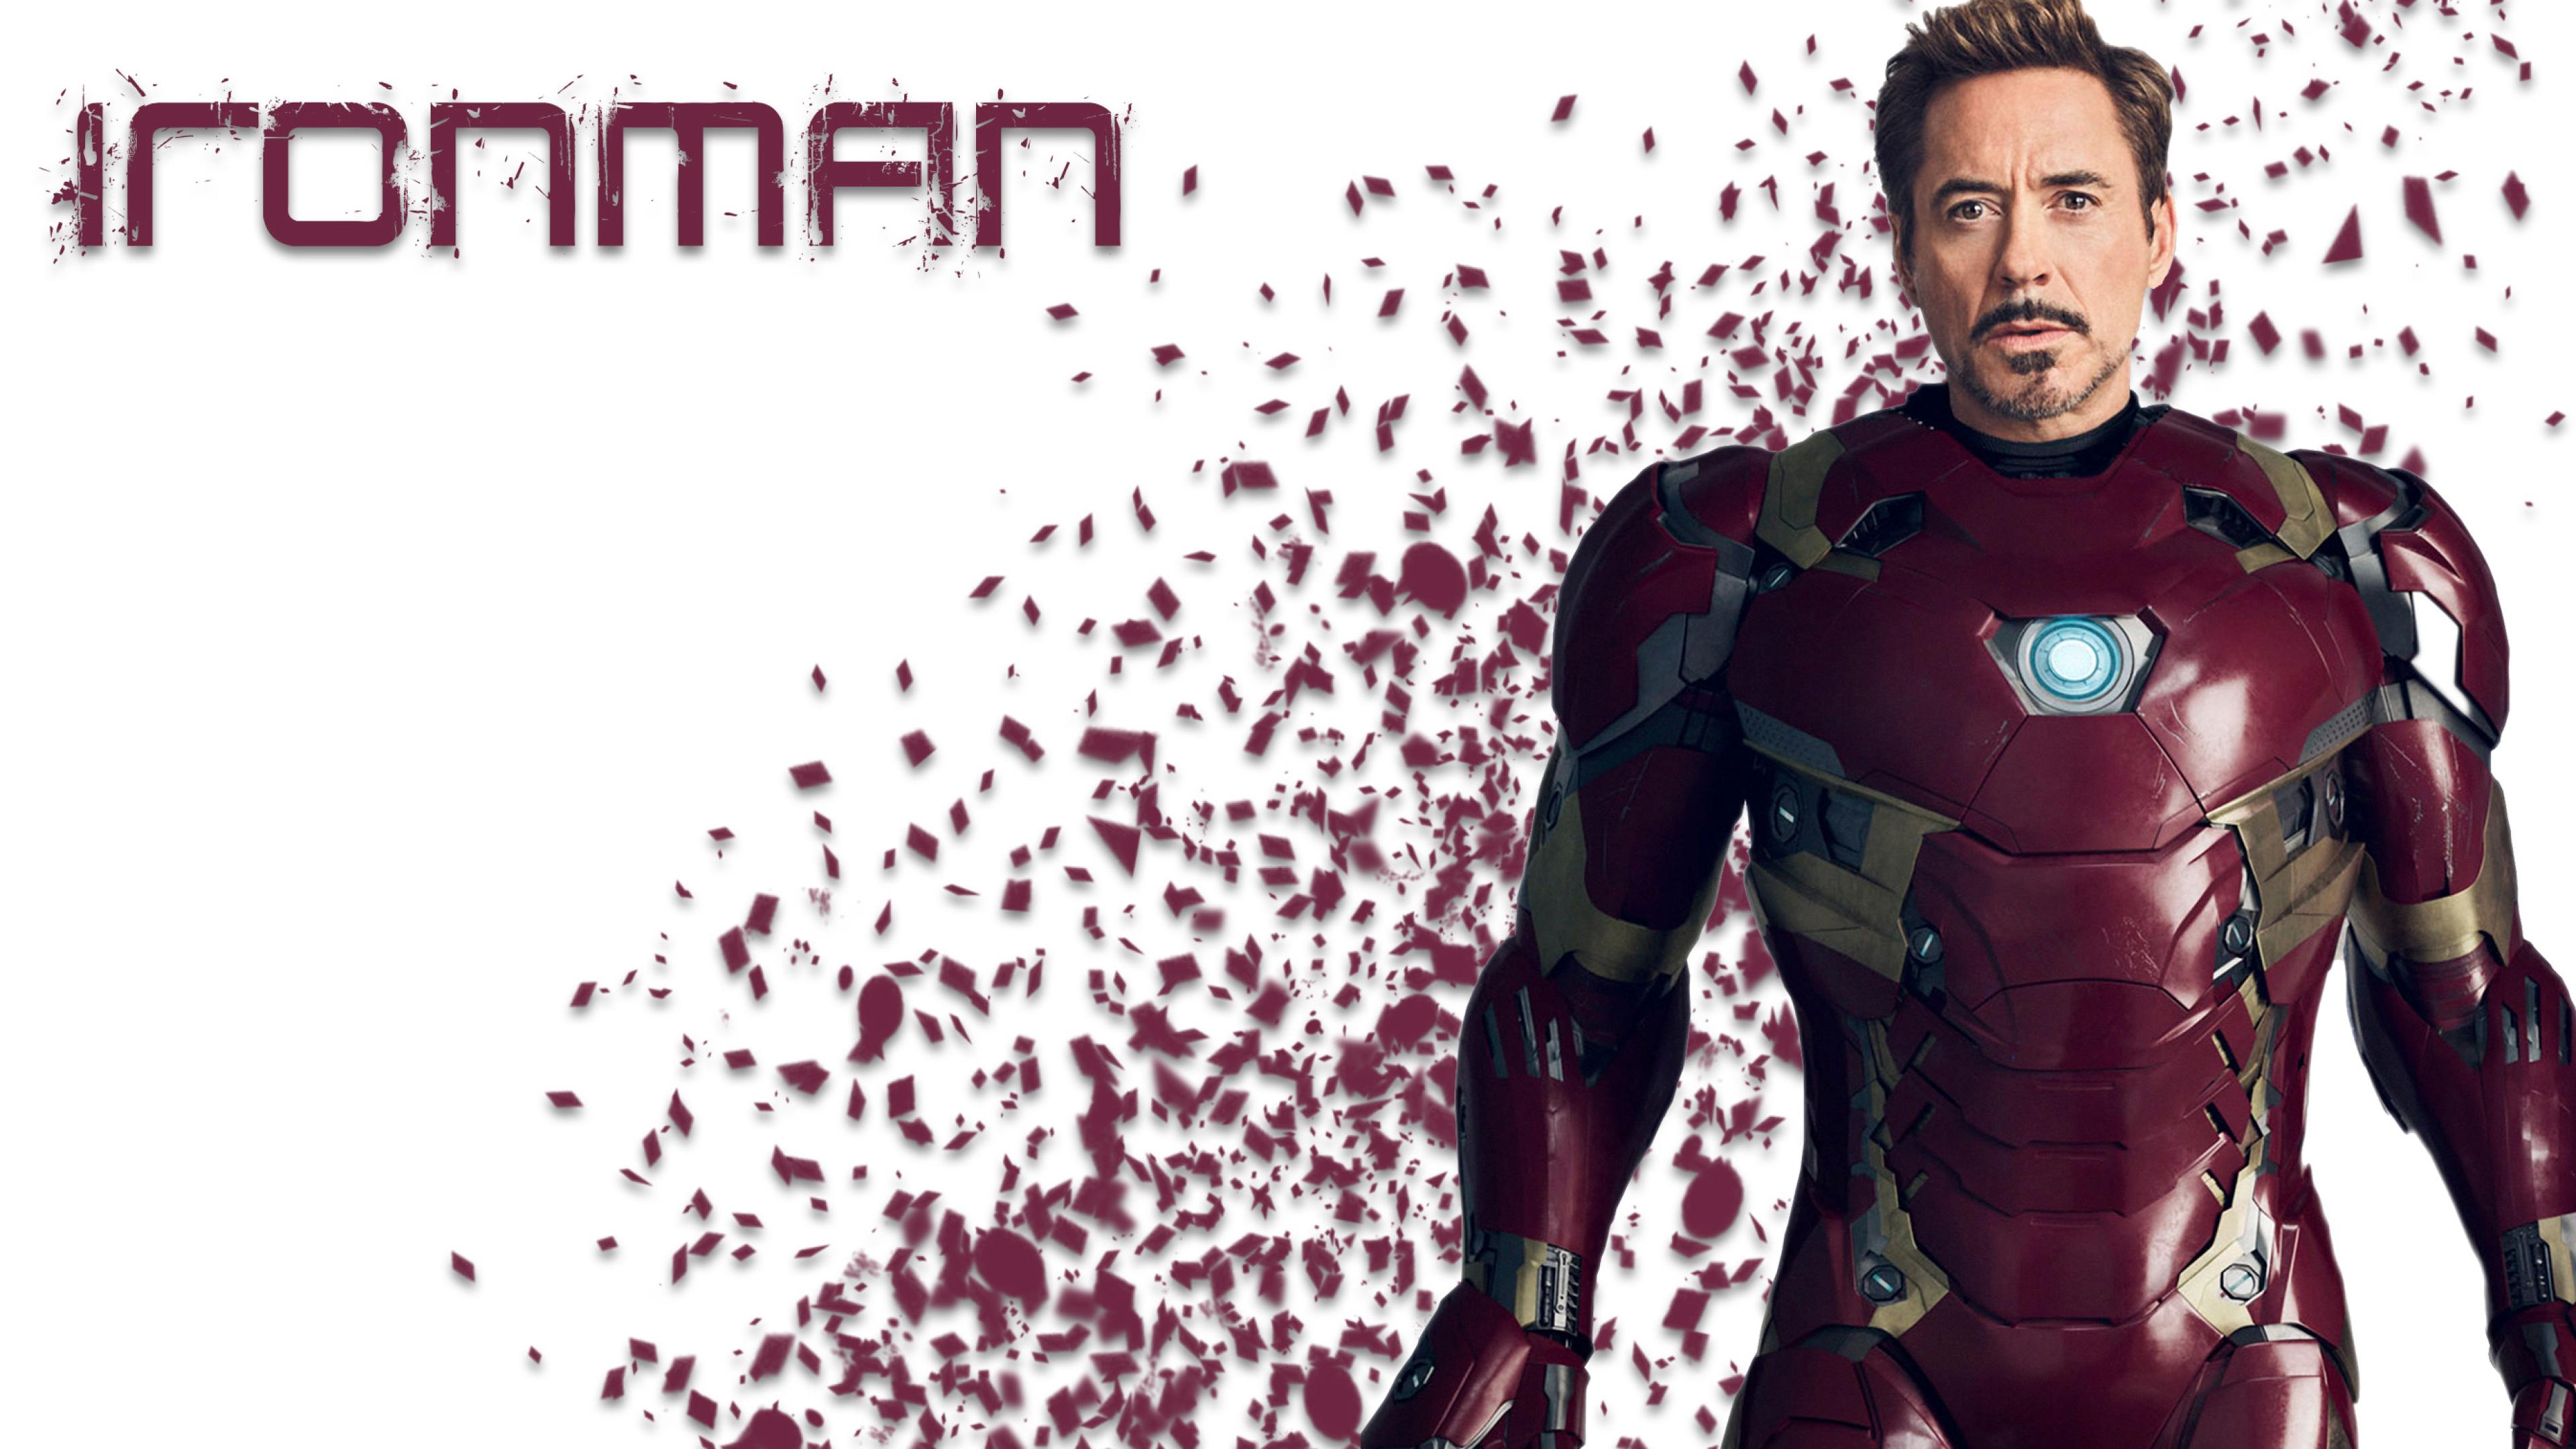 Iron Man Ultra Hd Wallpapers - Avengers Wallpaper Robert Downey Jr -  3840x2160 Wallpaper 